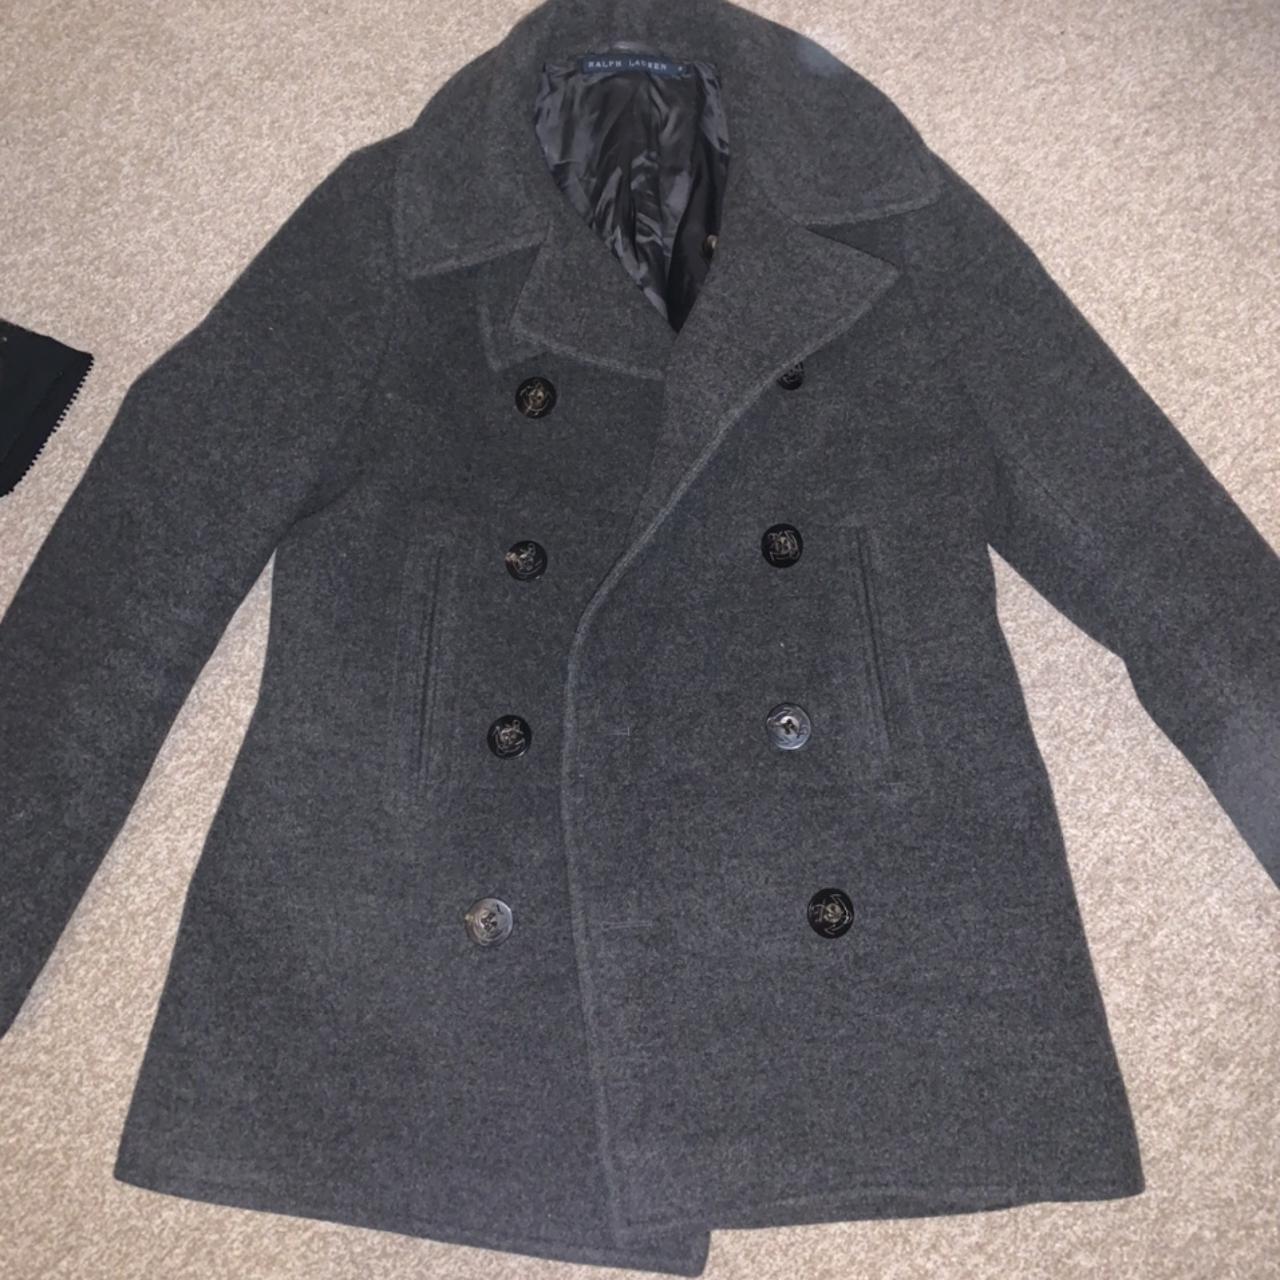 Ralph Lauren military coat. 100% wool. Size 8 in... - Depop